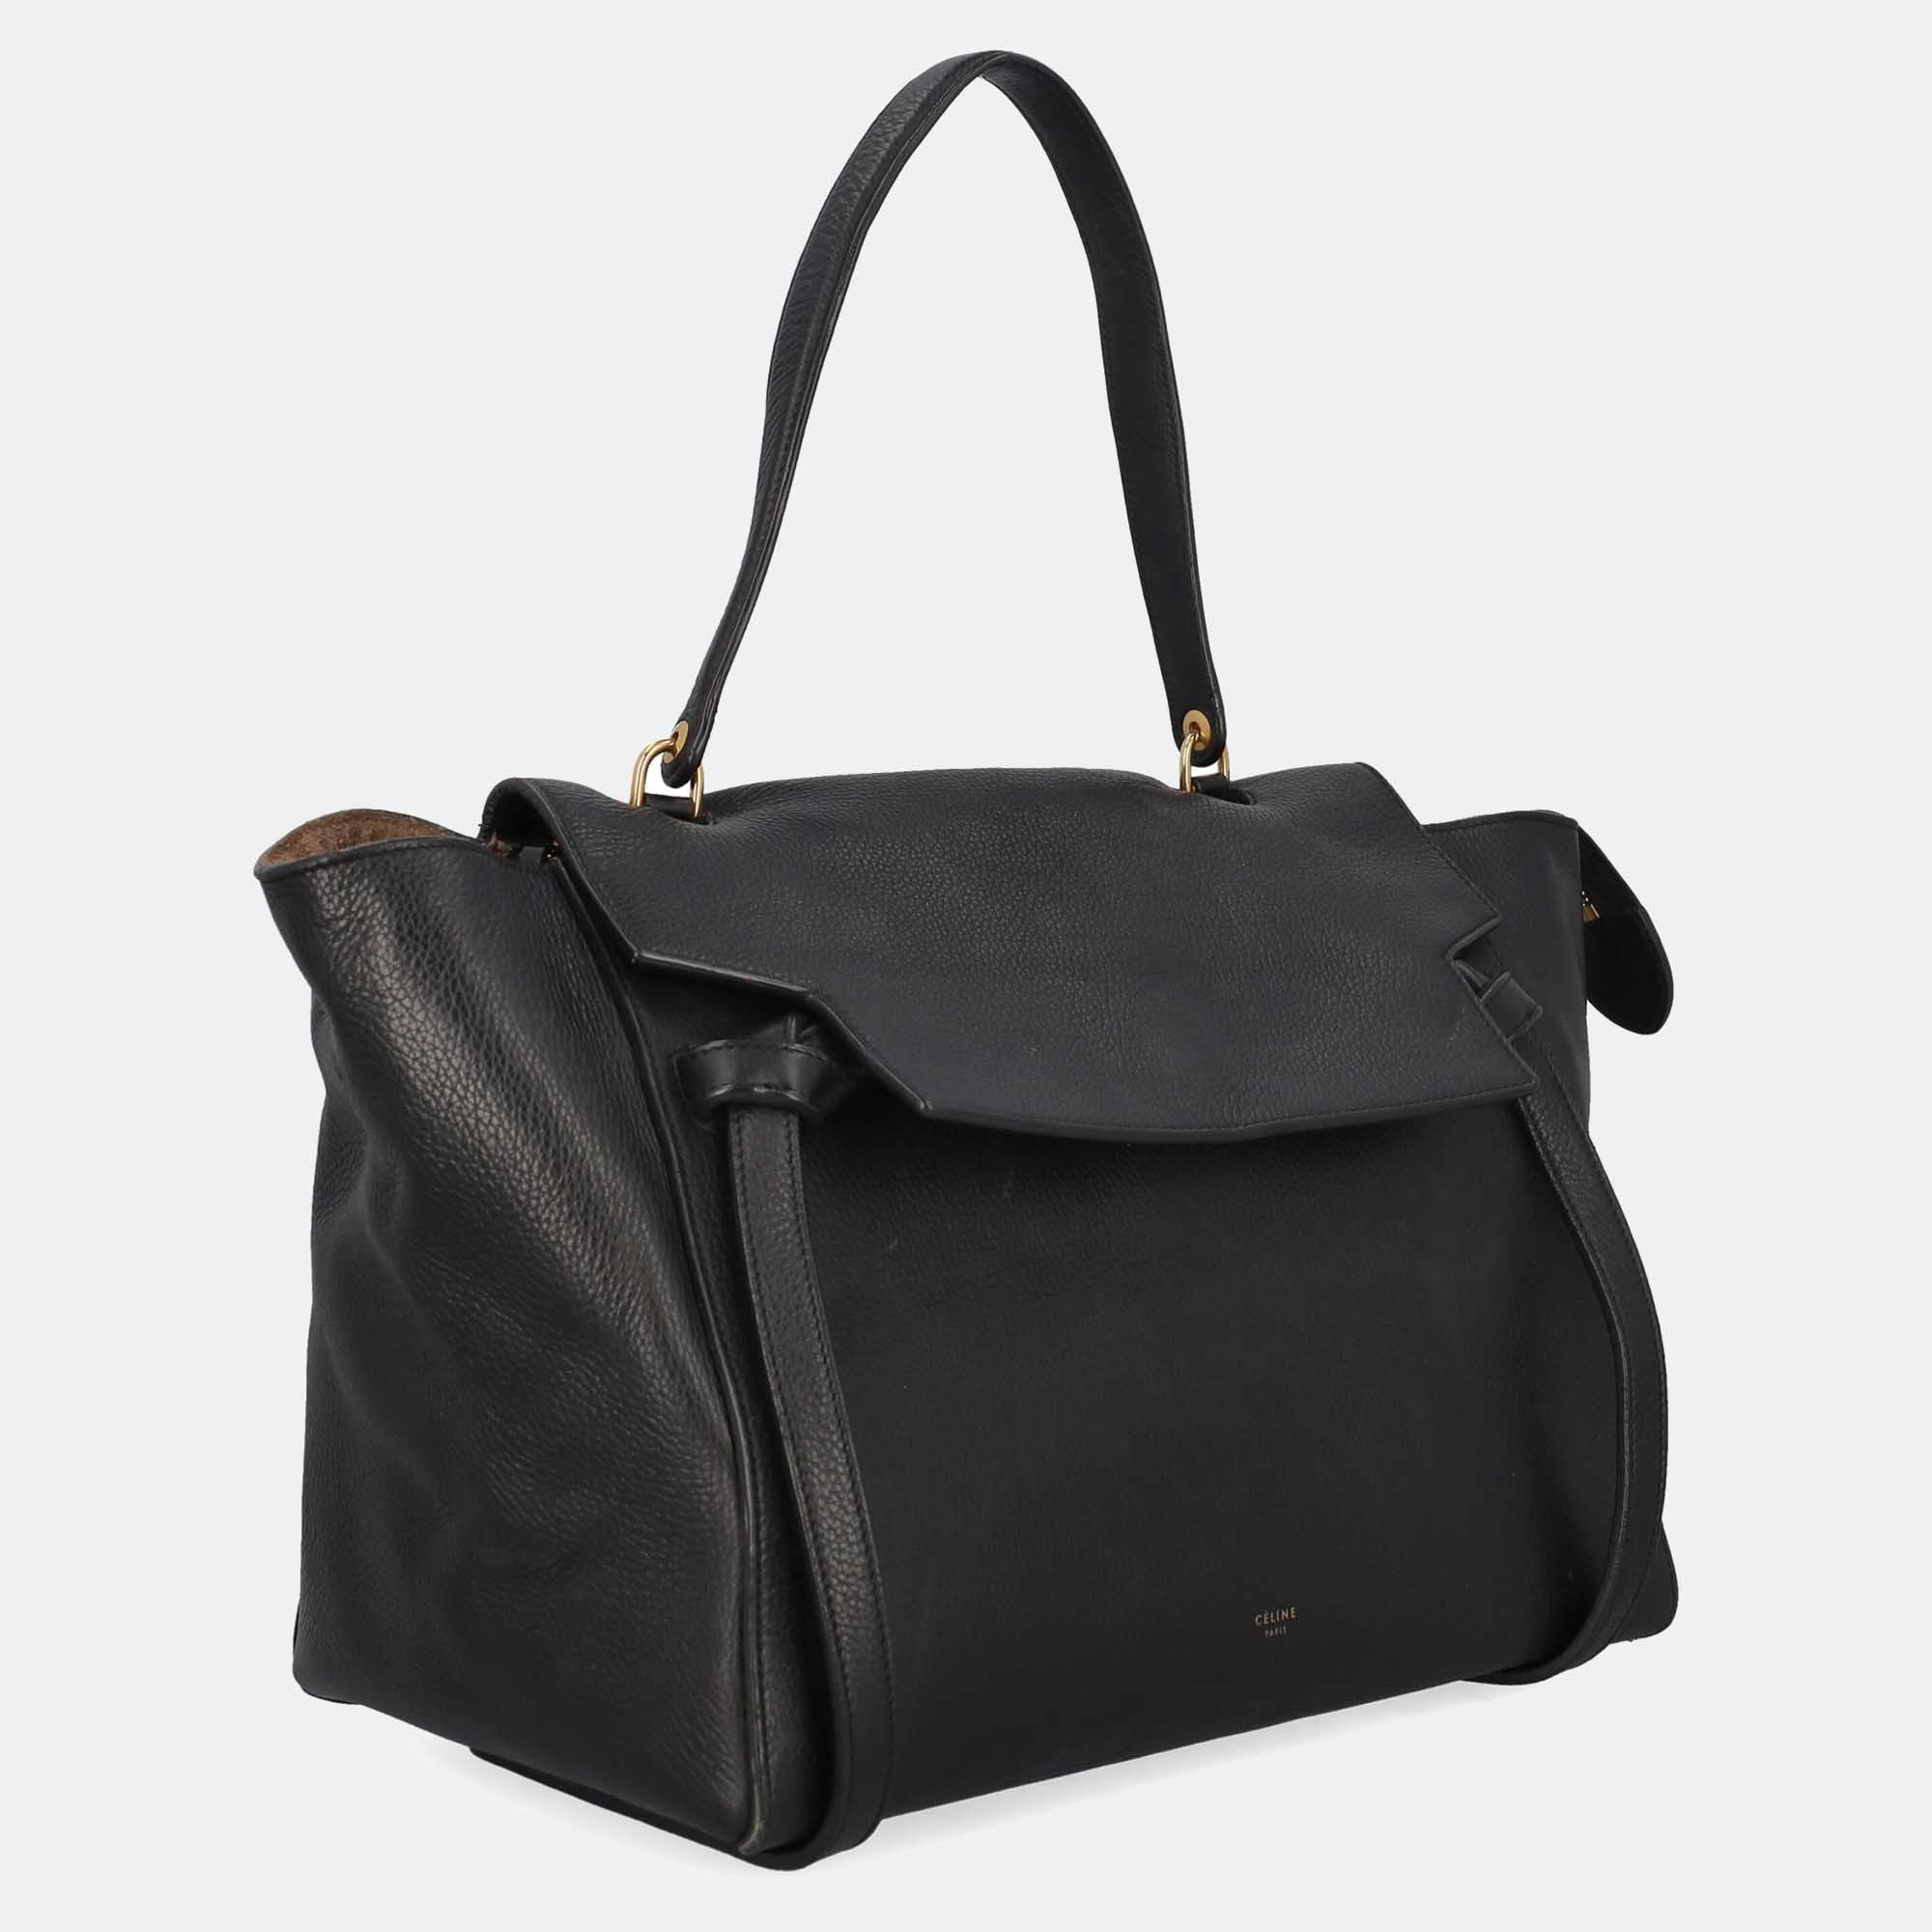 Celine Belt Bag -  Women's Leather Tote Bag - Black - One Size